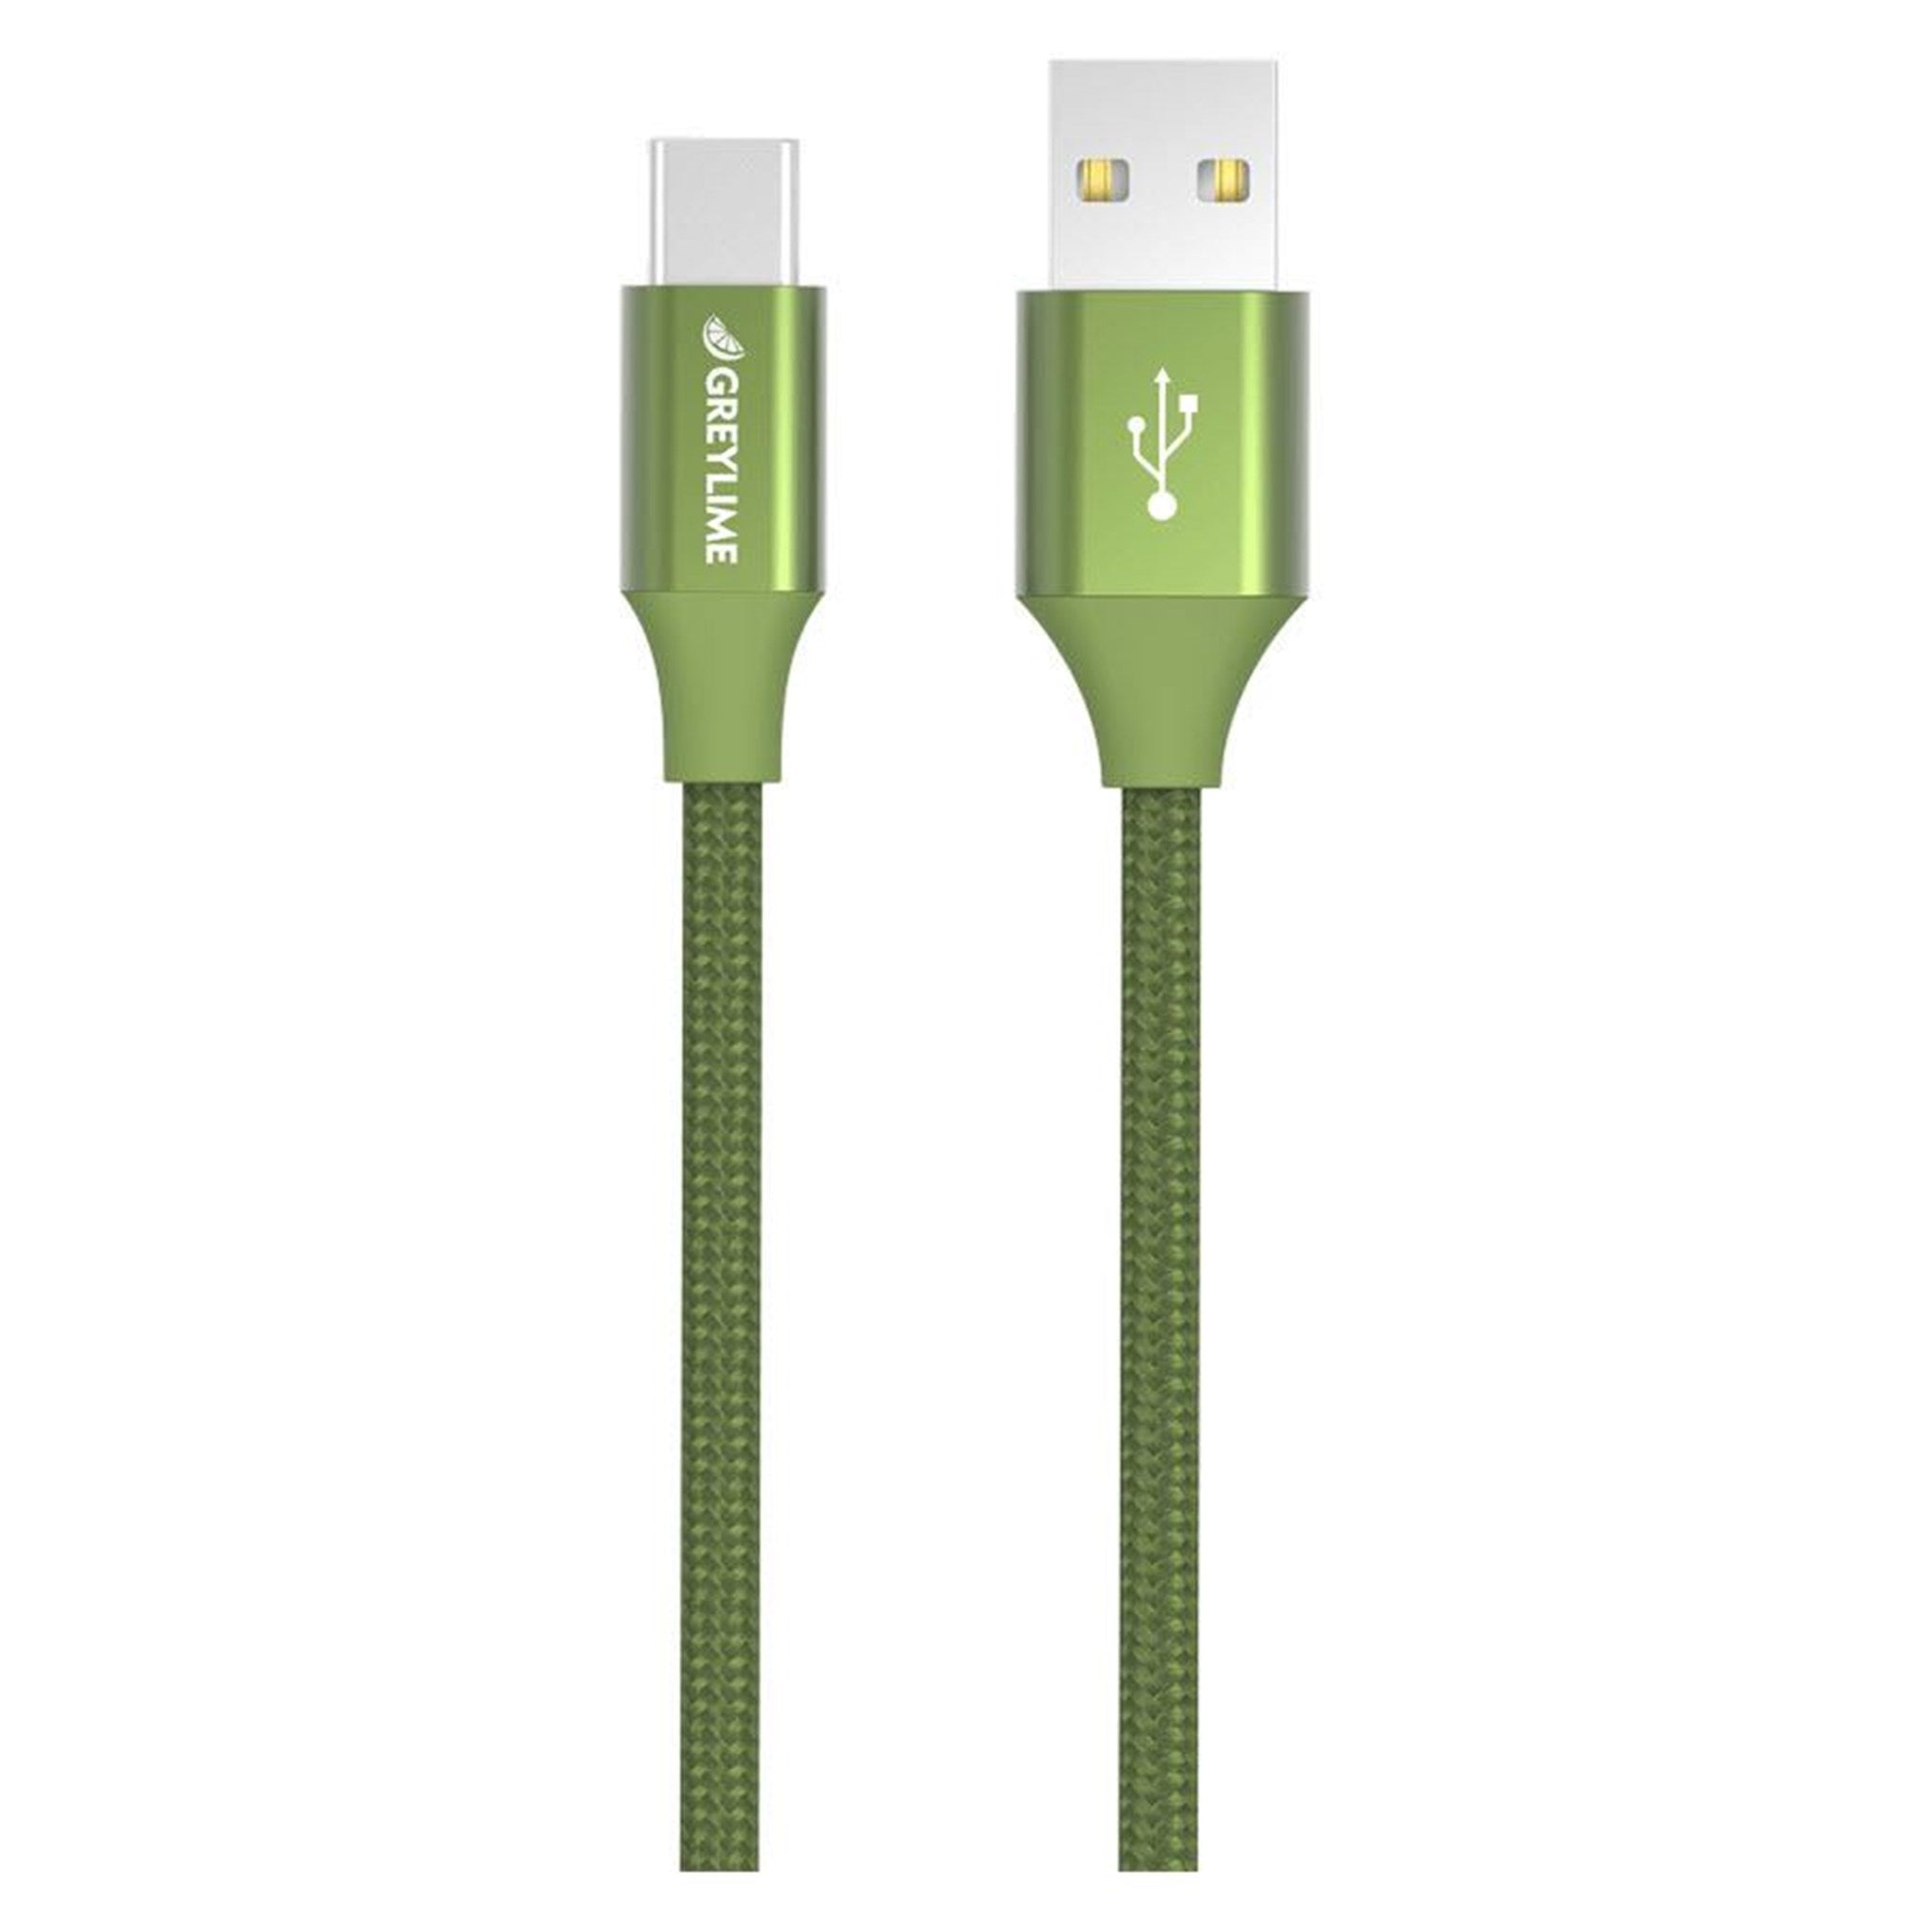 Billede af GreyLime Braided USB-A til USB-C Kabel Grøn 1 m hos GreyLime